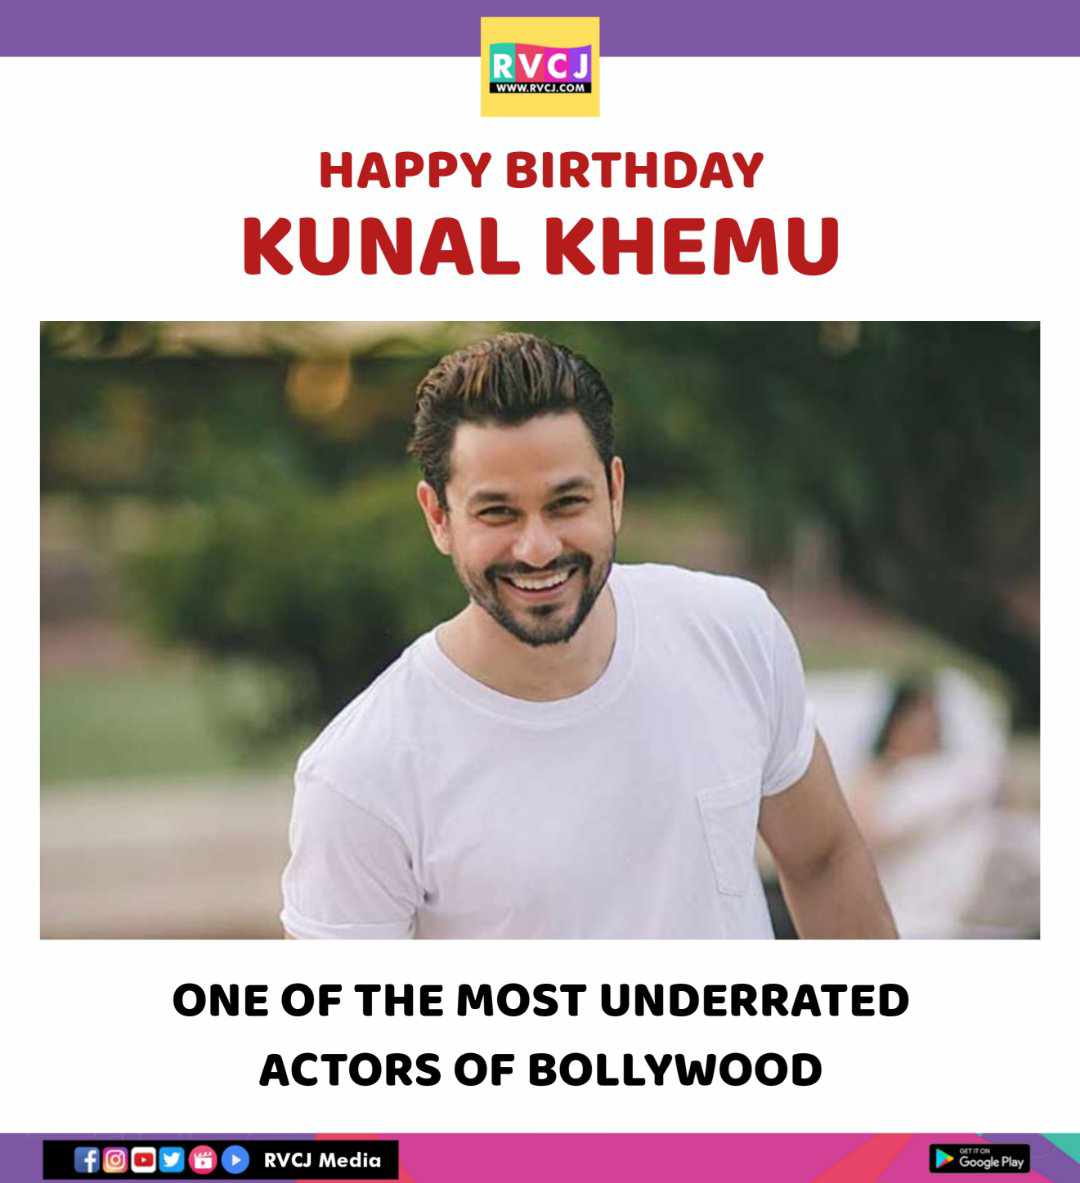 Happy Birthday Kunal Khemu

#kunalkhemu @kunalkemmu